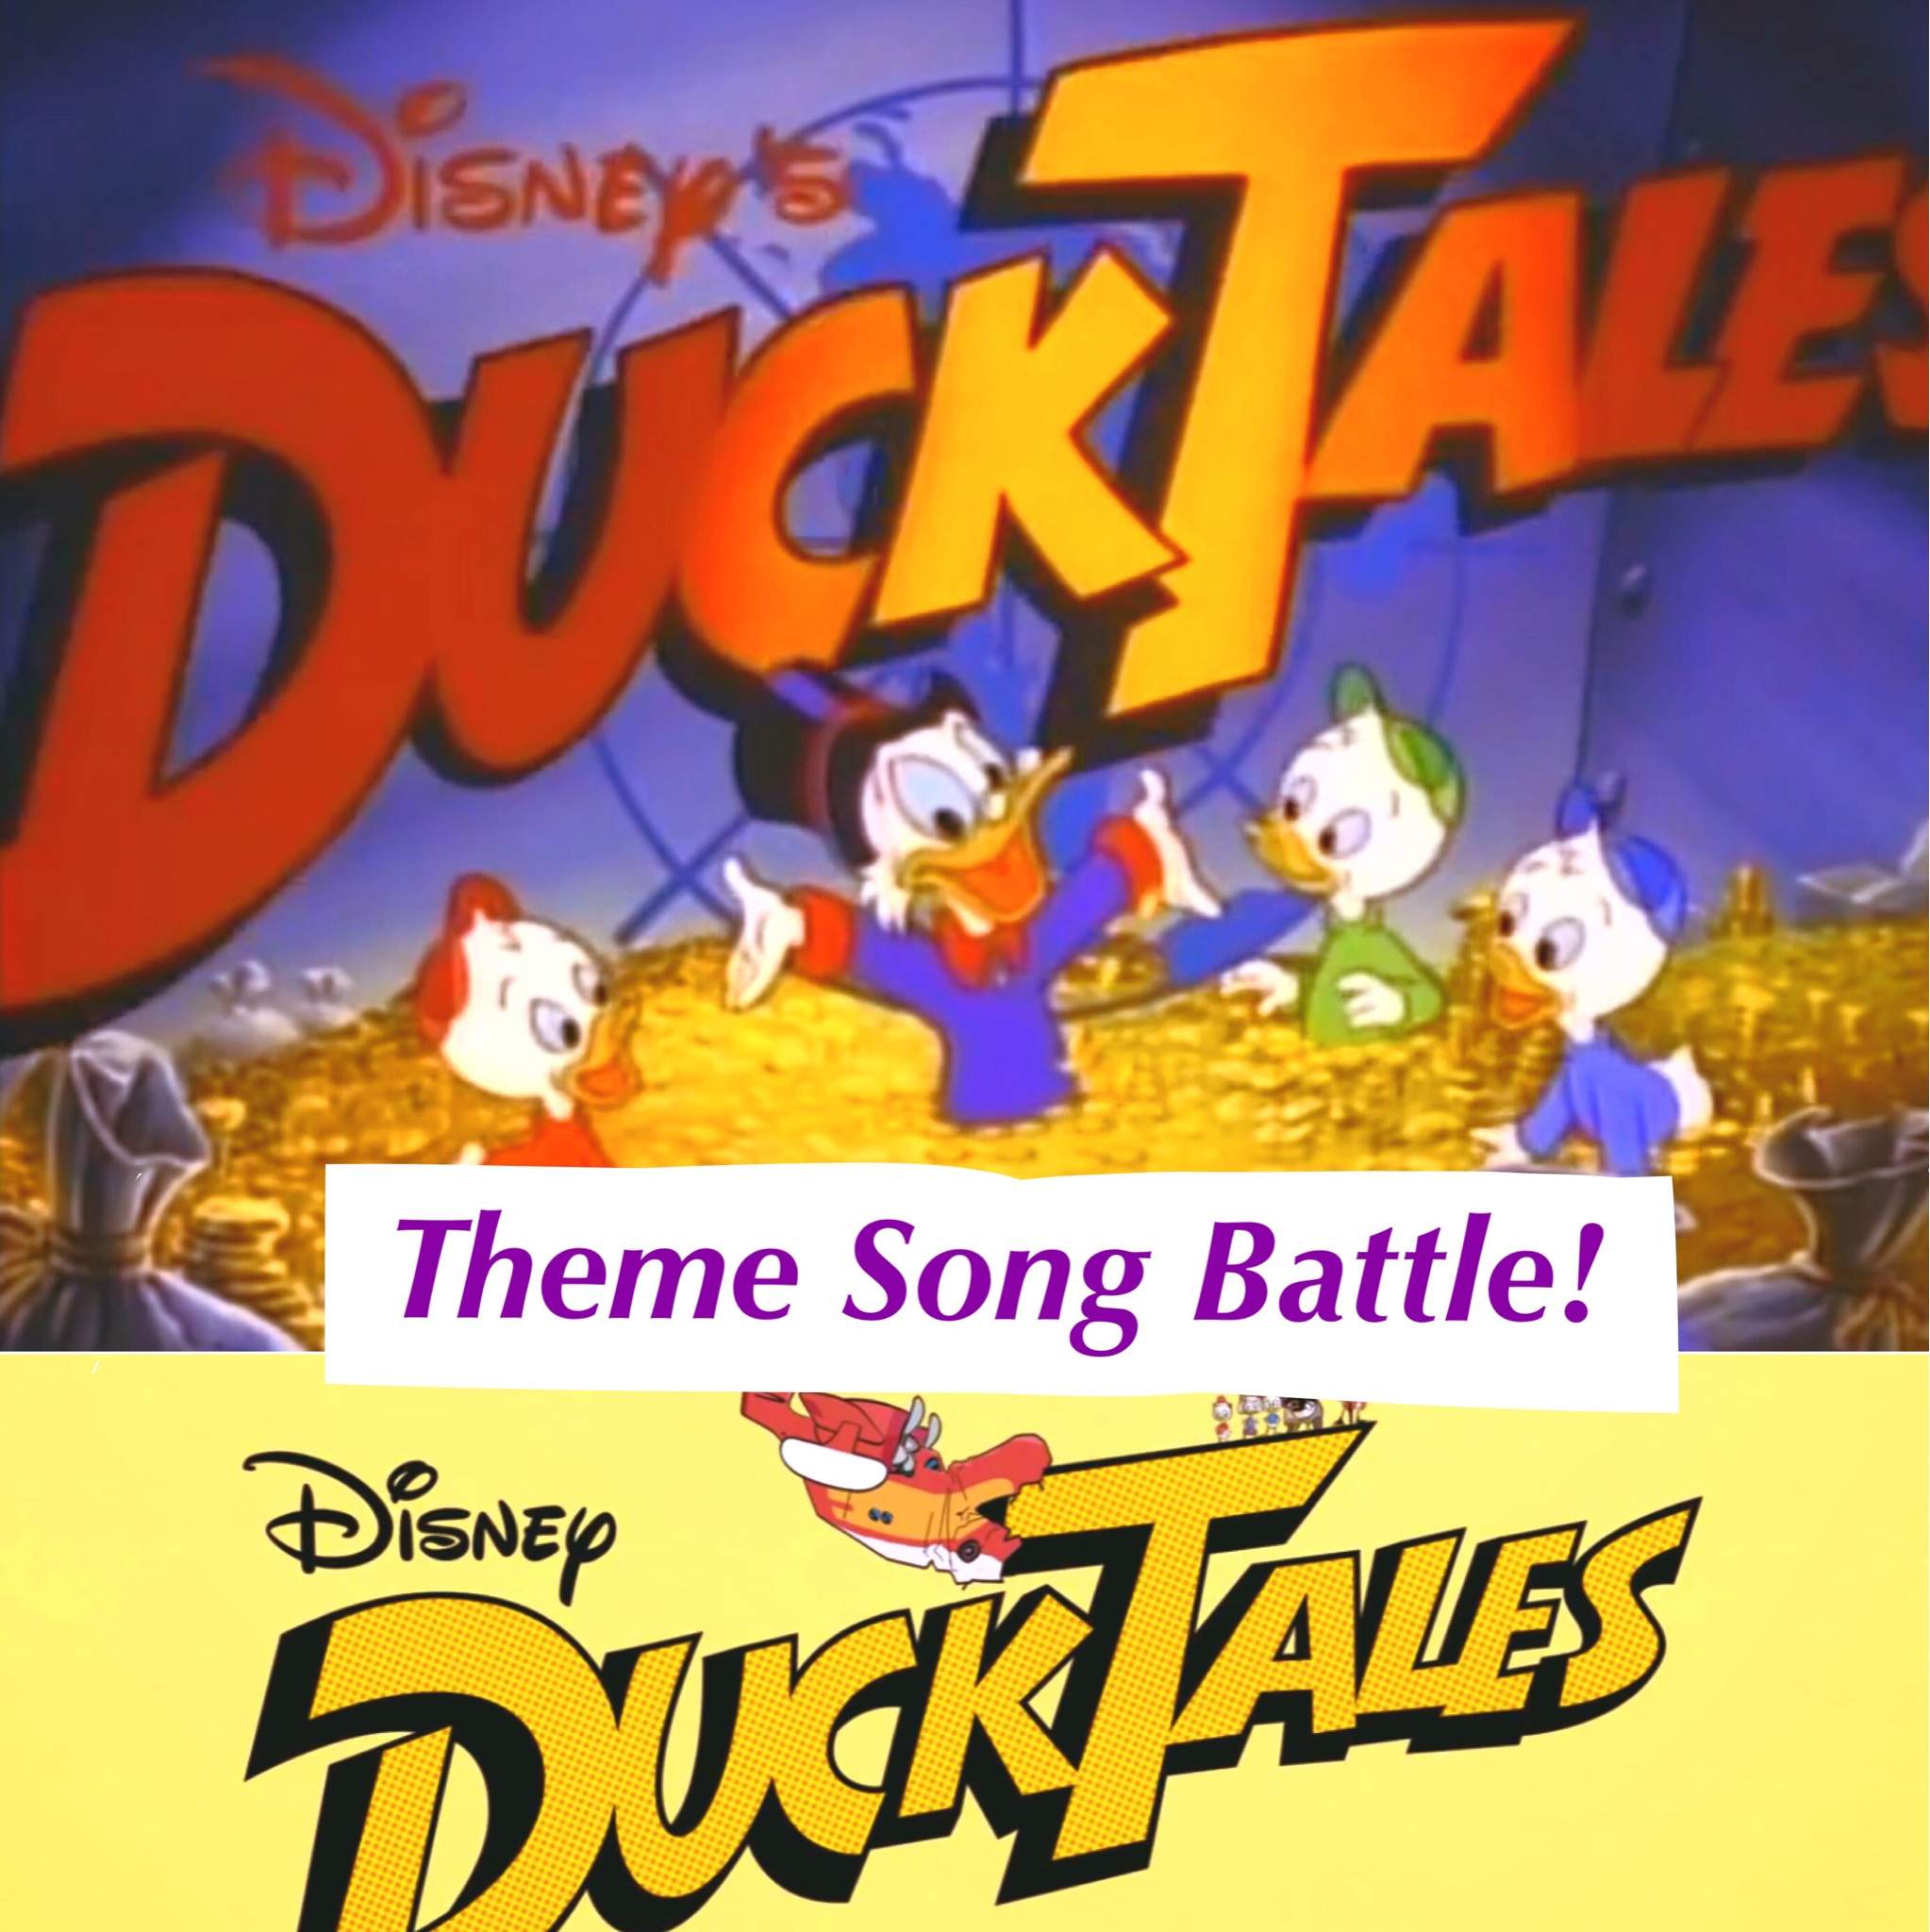 ducktales theme song (2017) lyrics